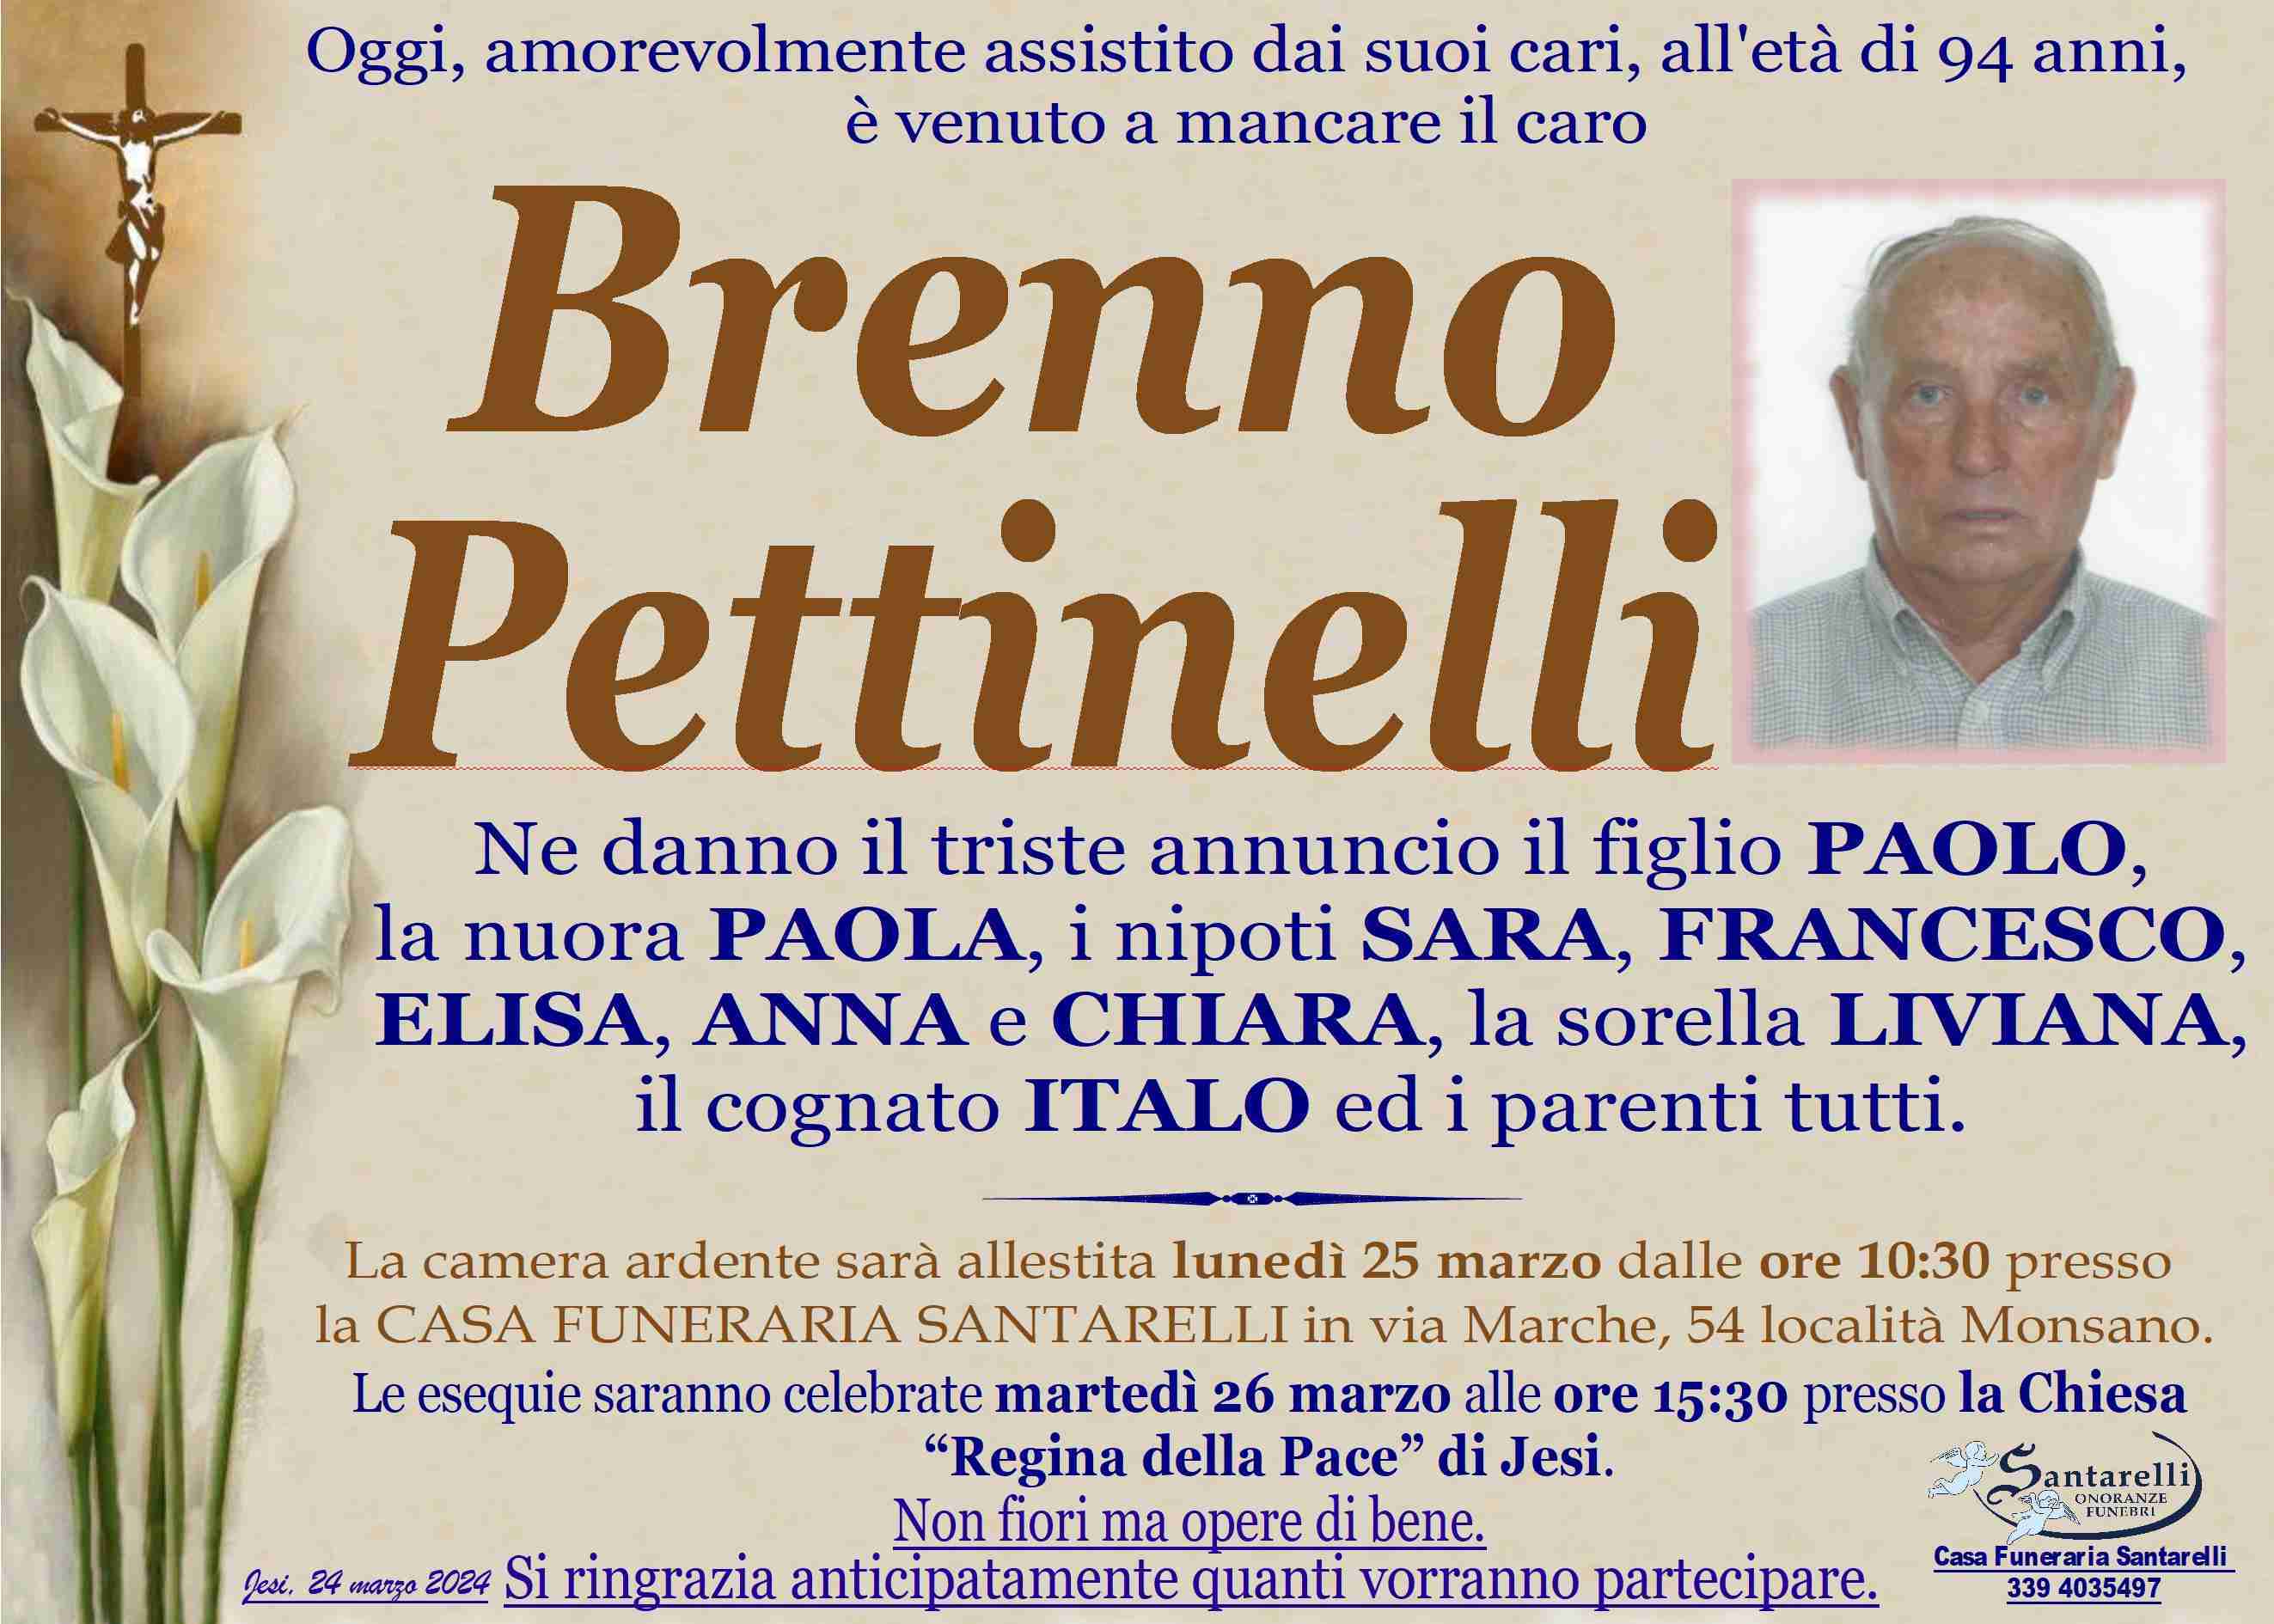 Brenno Pettinelli